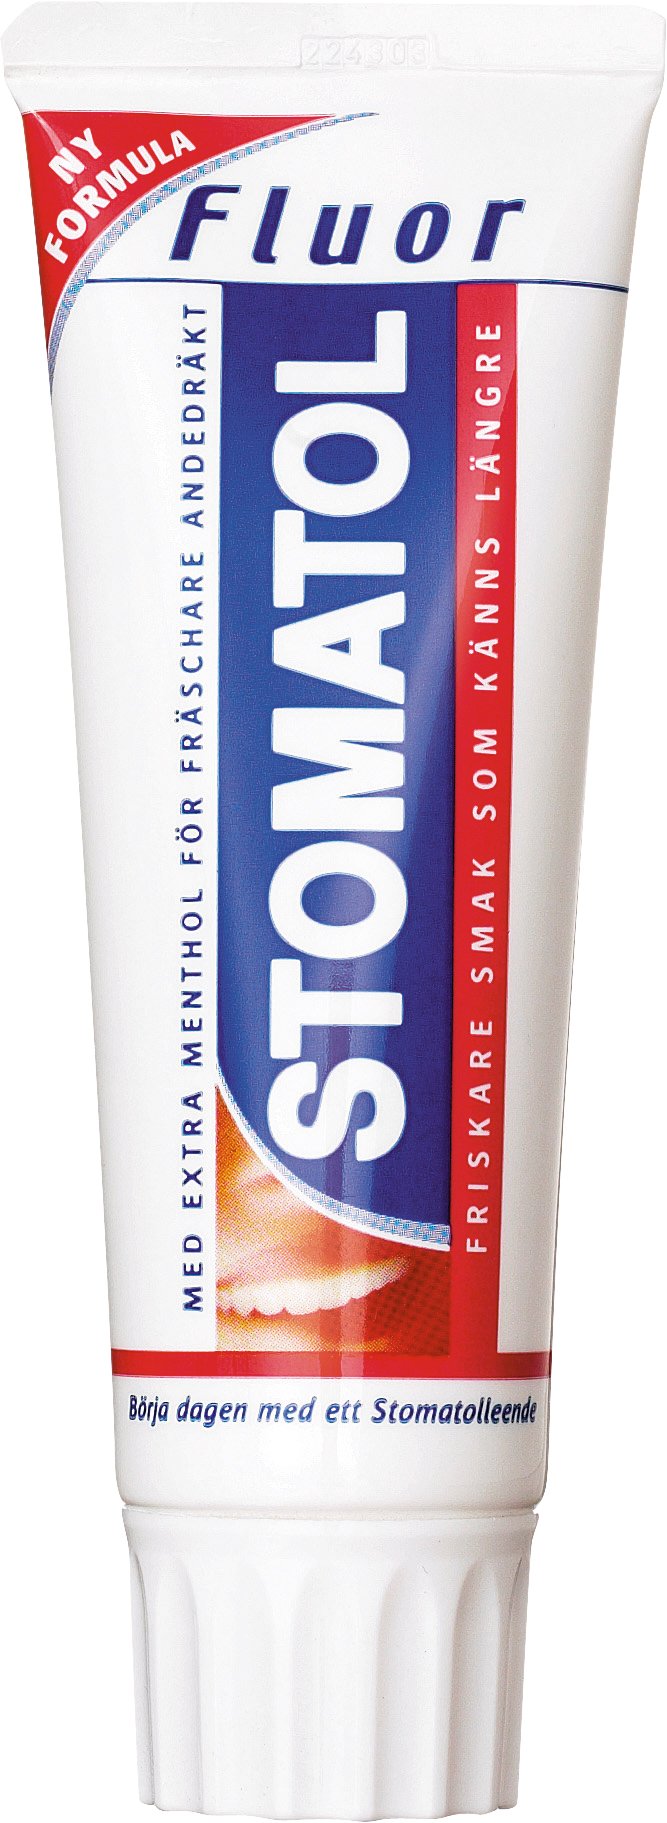 Tandkräm Stomatol 75ml